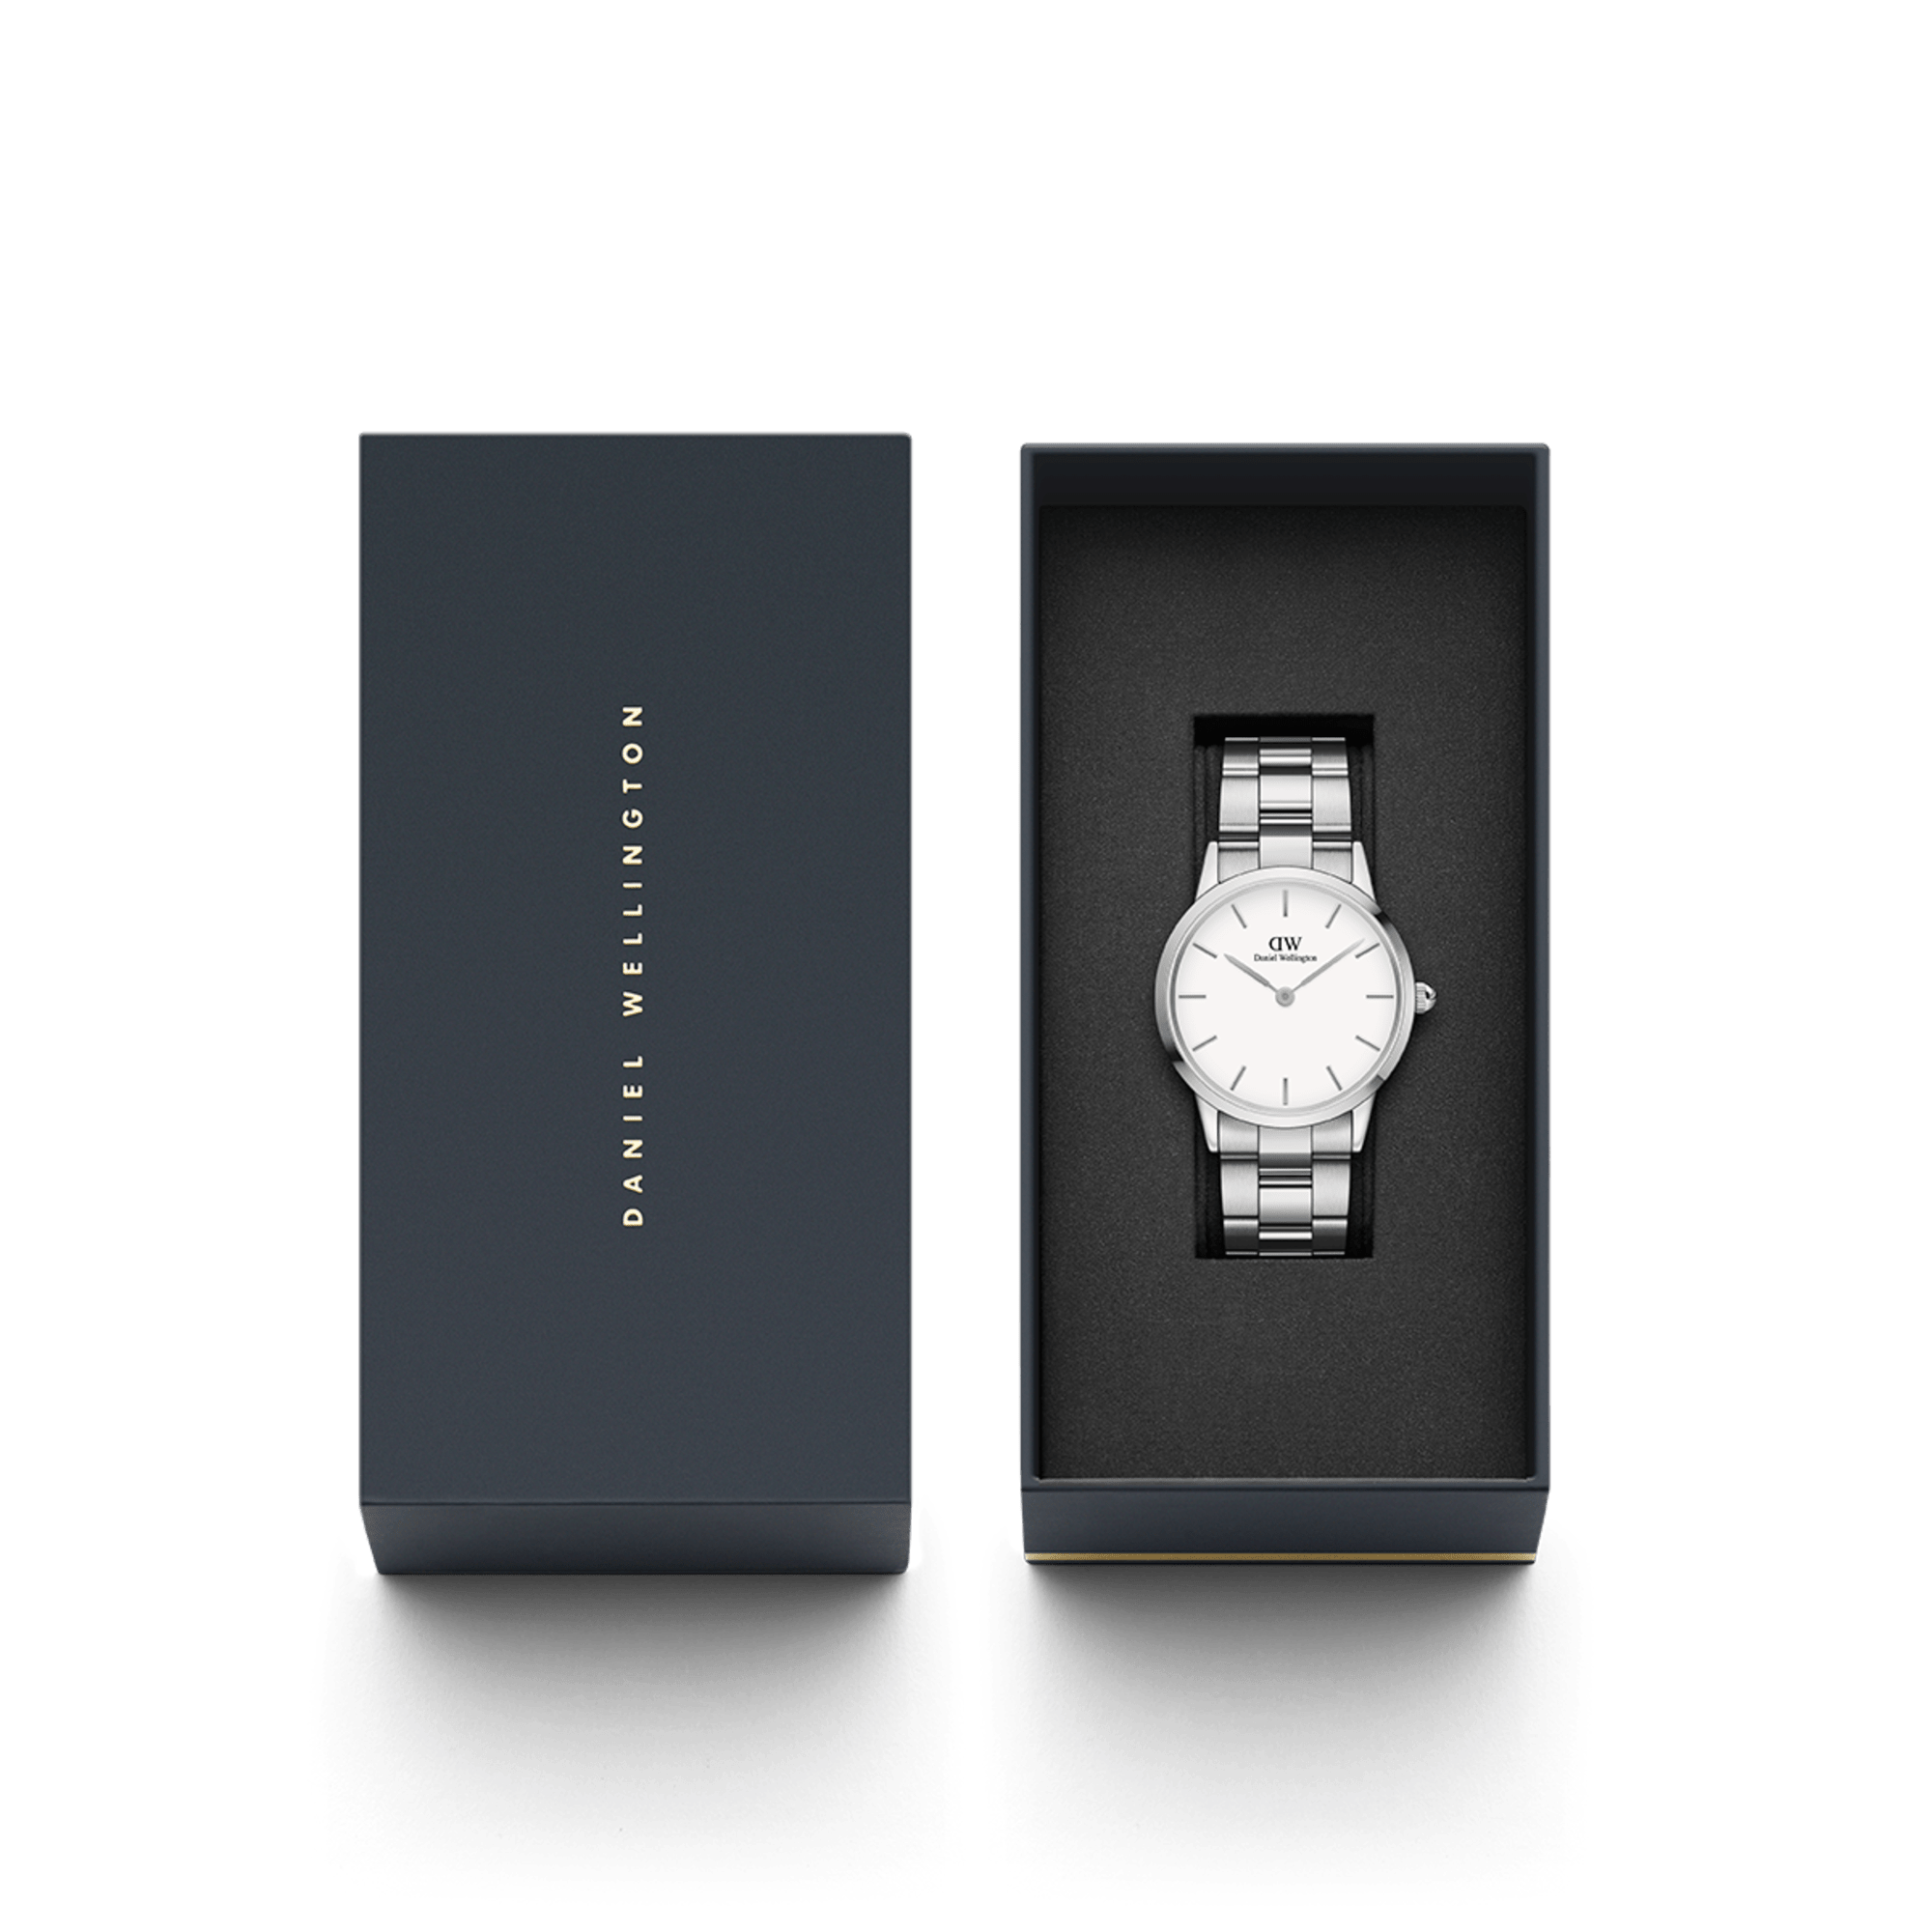 ダニエルウェリントン 腕時計 Iconic LINK 40 シルバー DW00100341 ホワイト